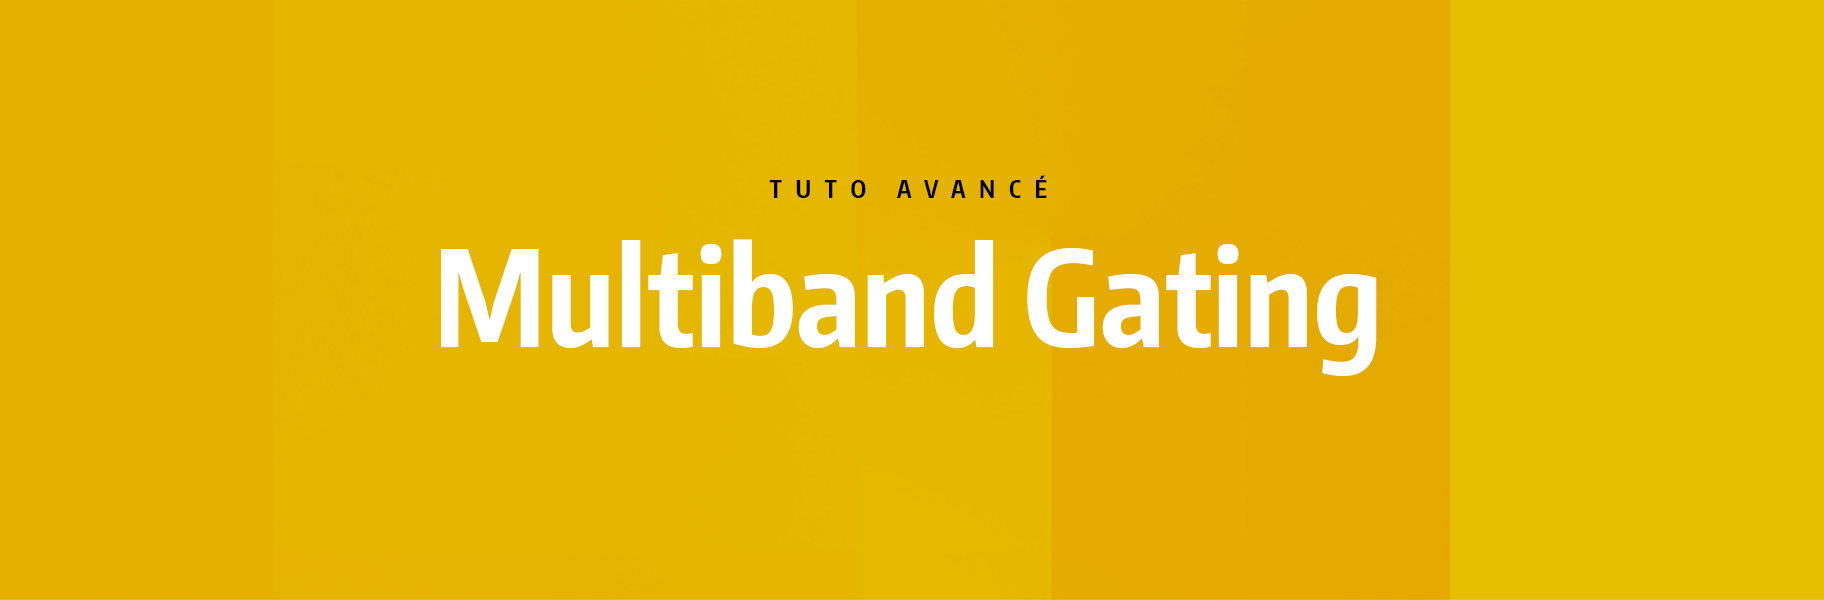 Tutoriel Ableton Live - Multiband Gating